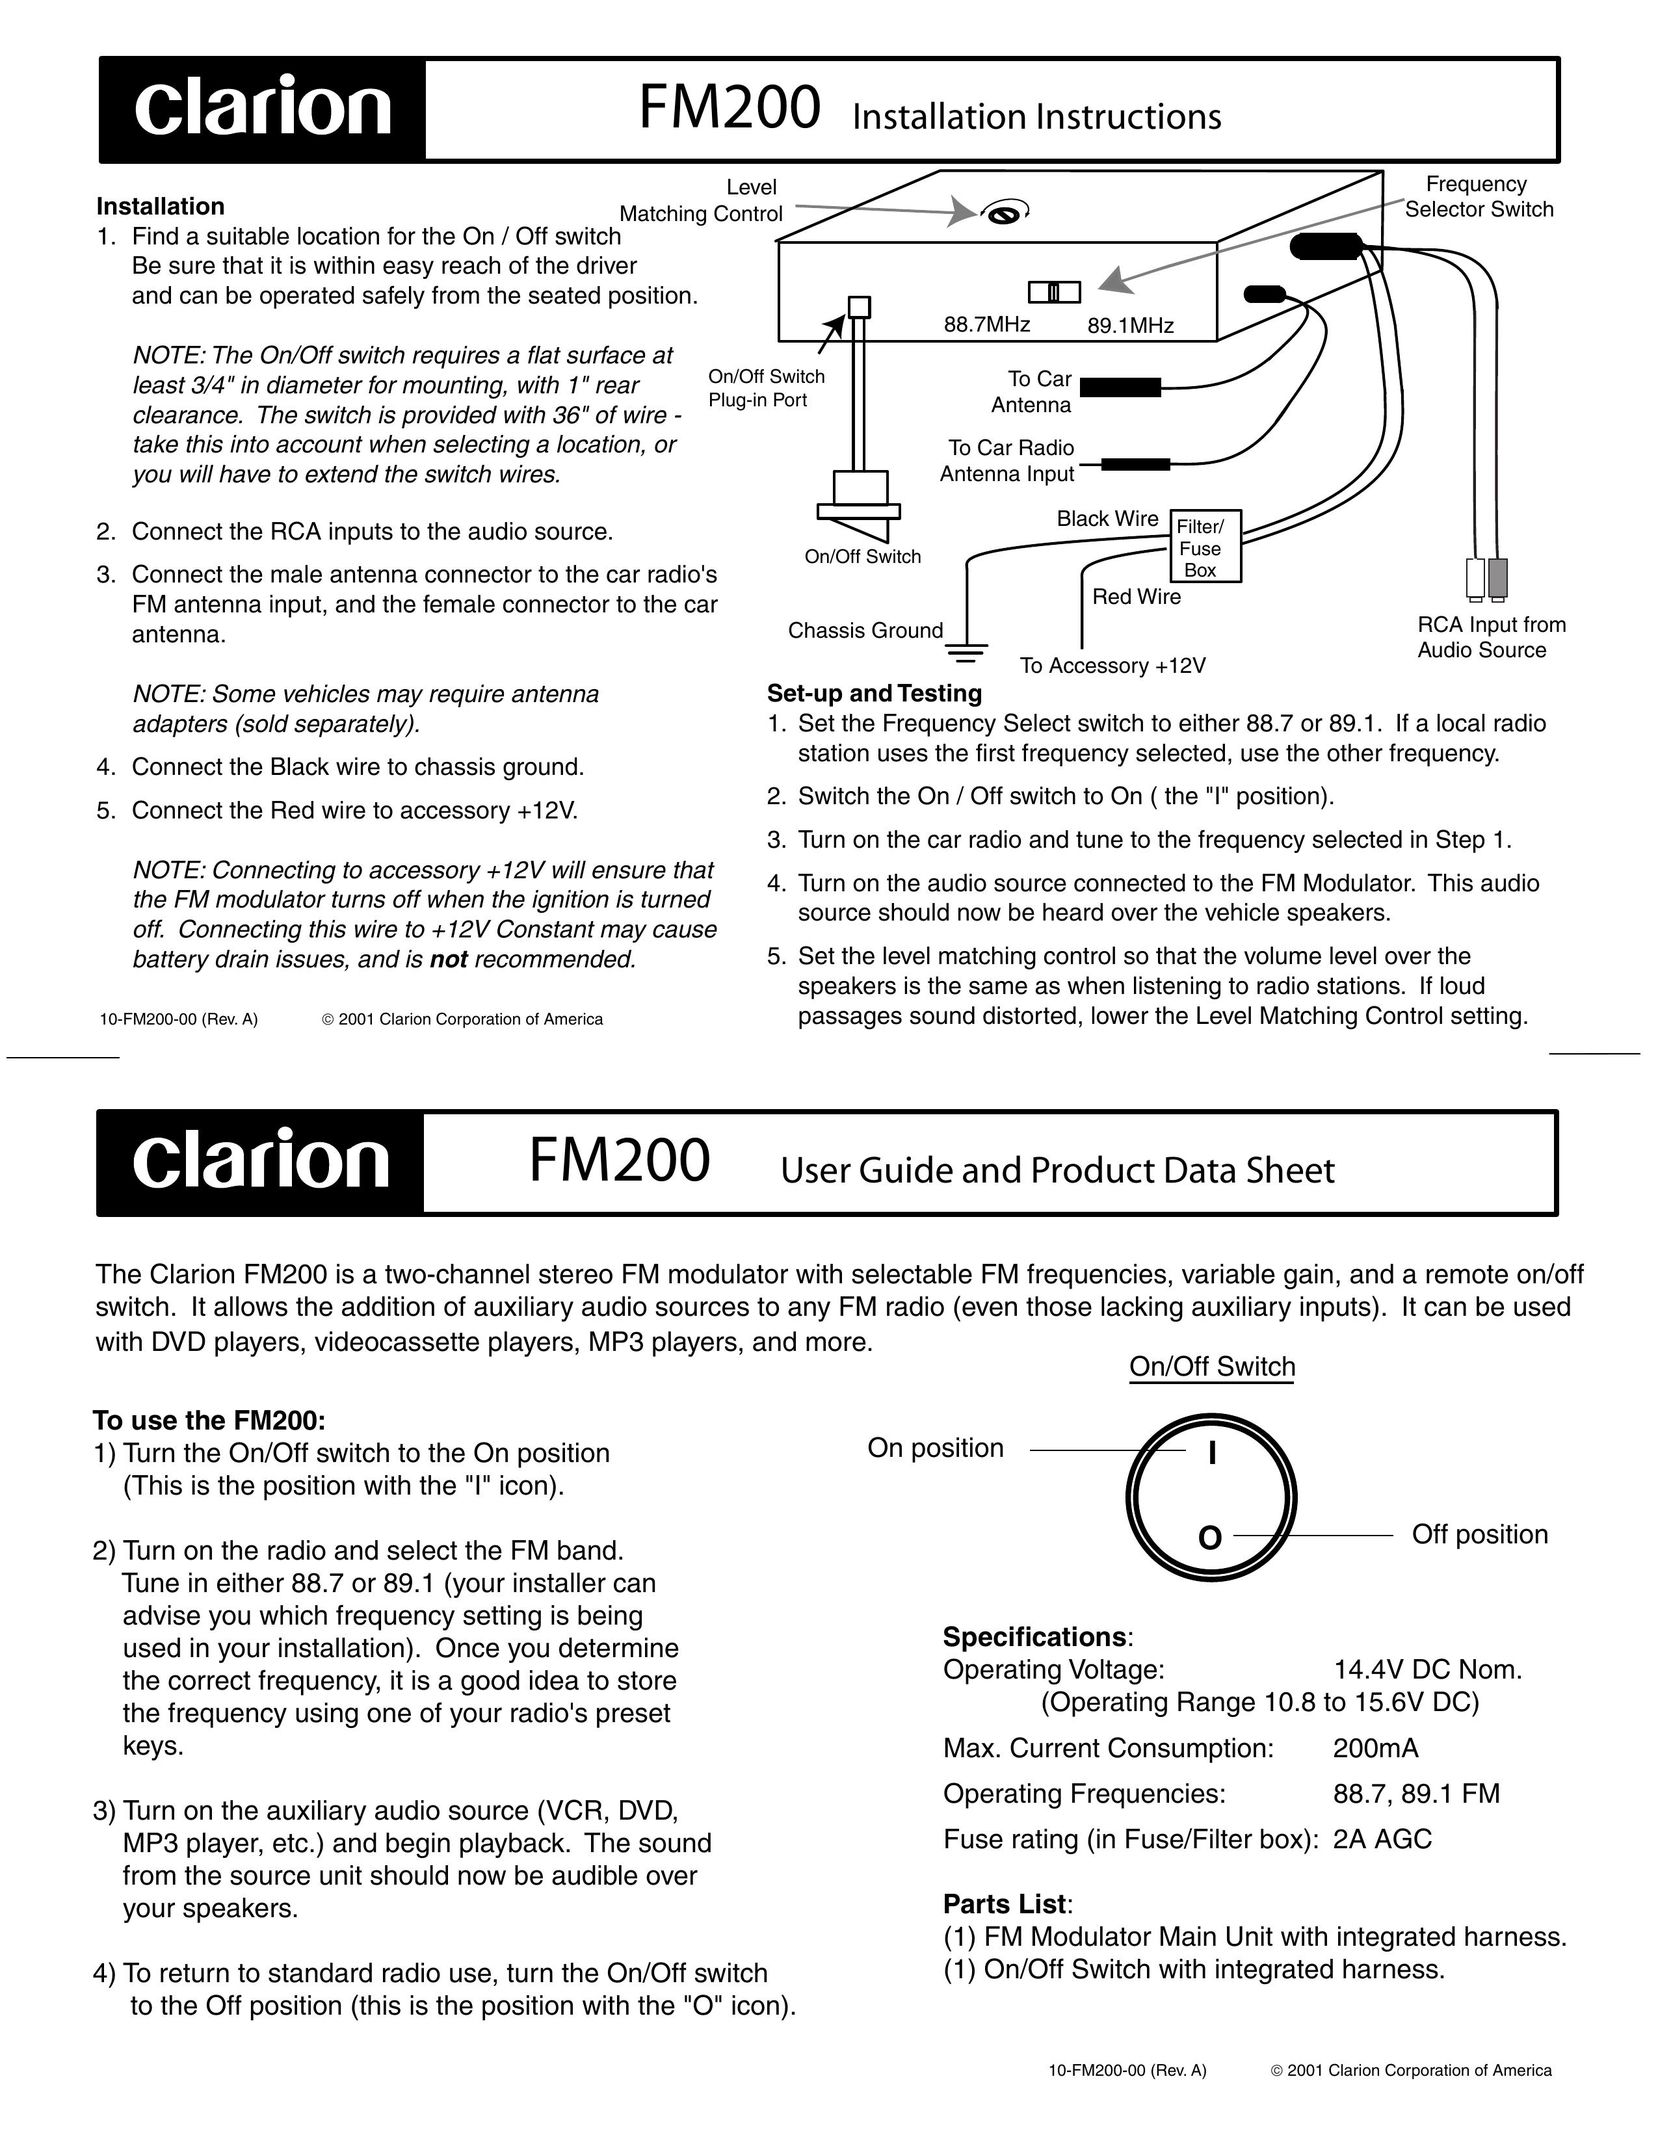 Clarion FM200 Radio Antenna User Manual